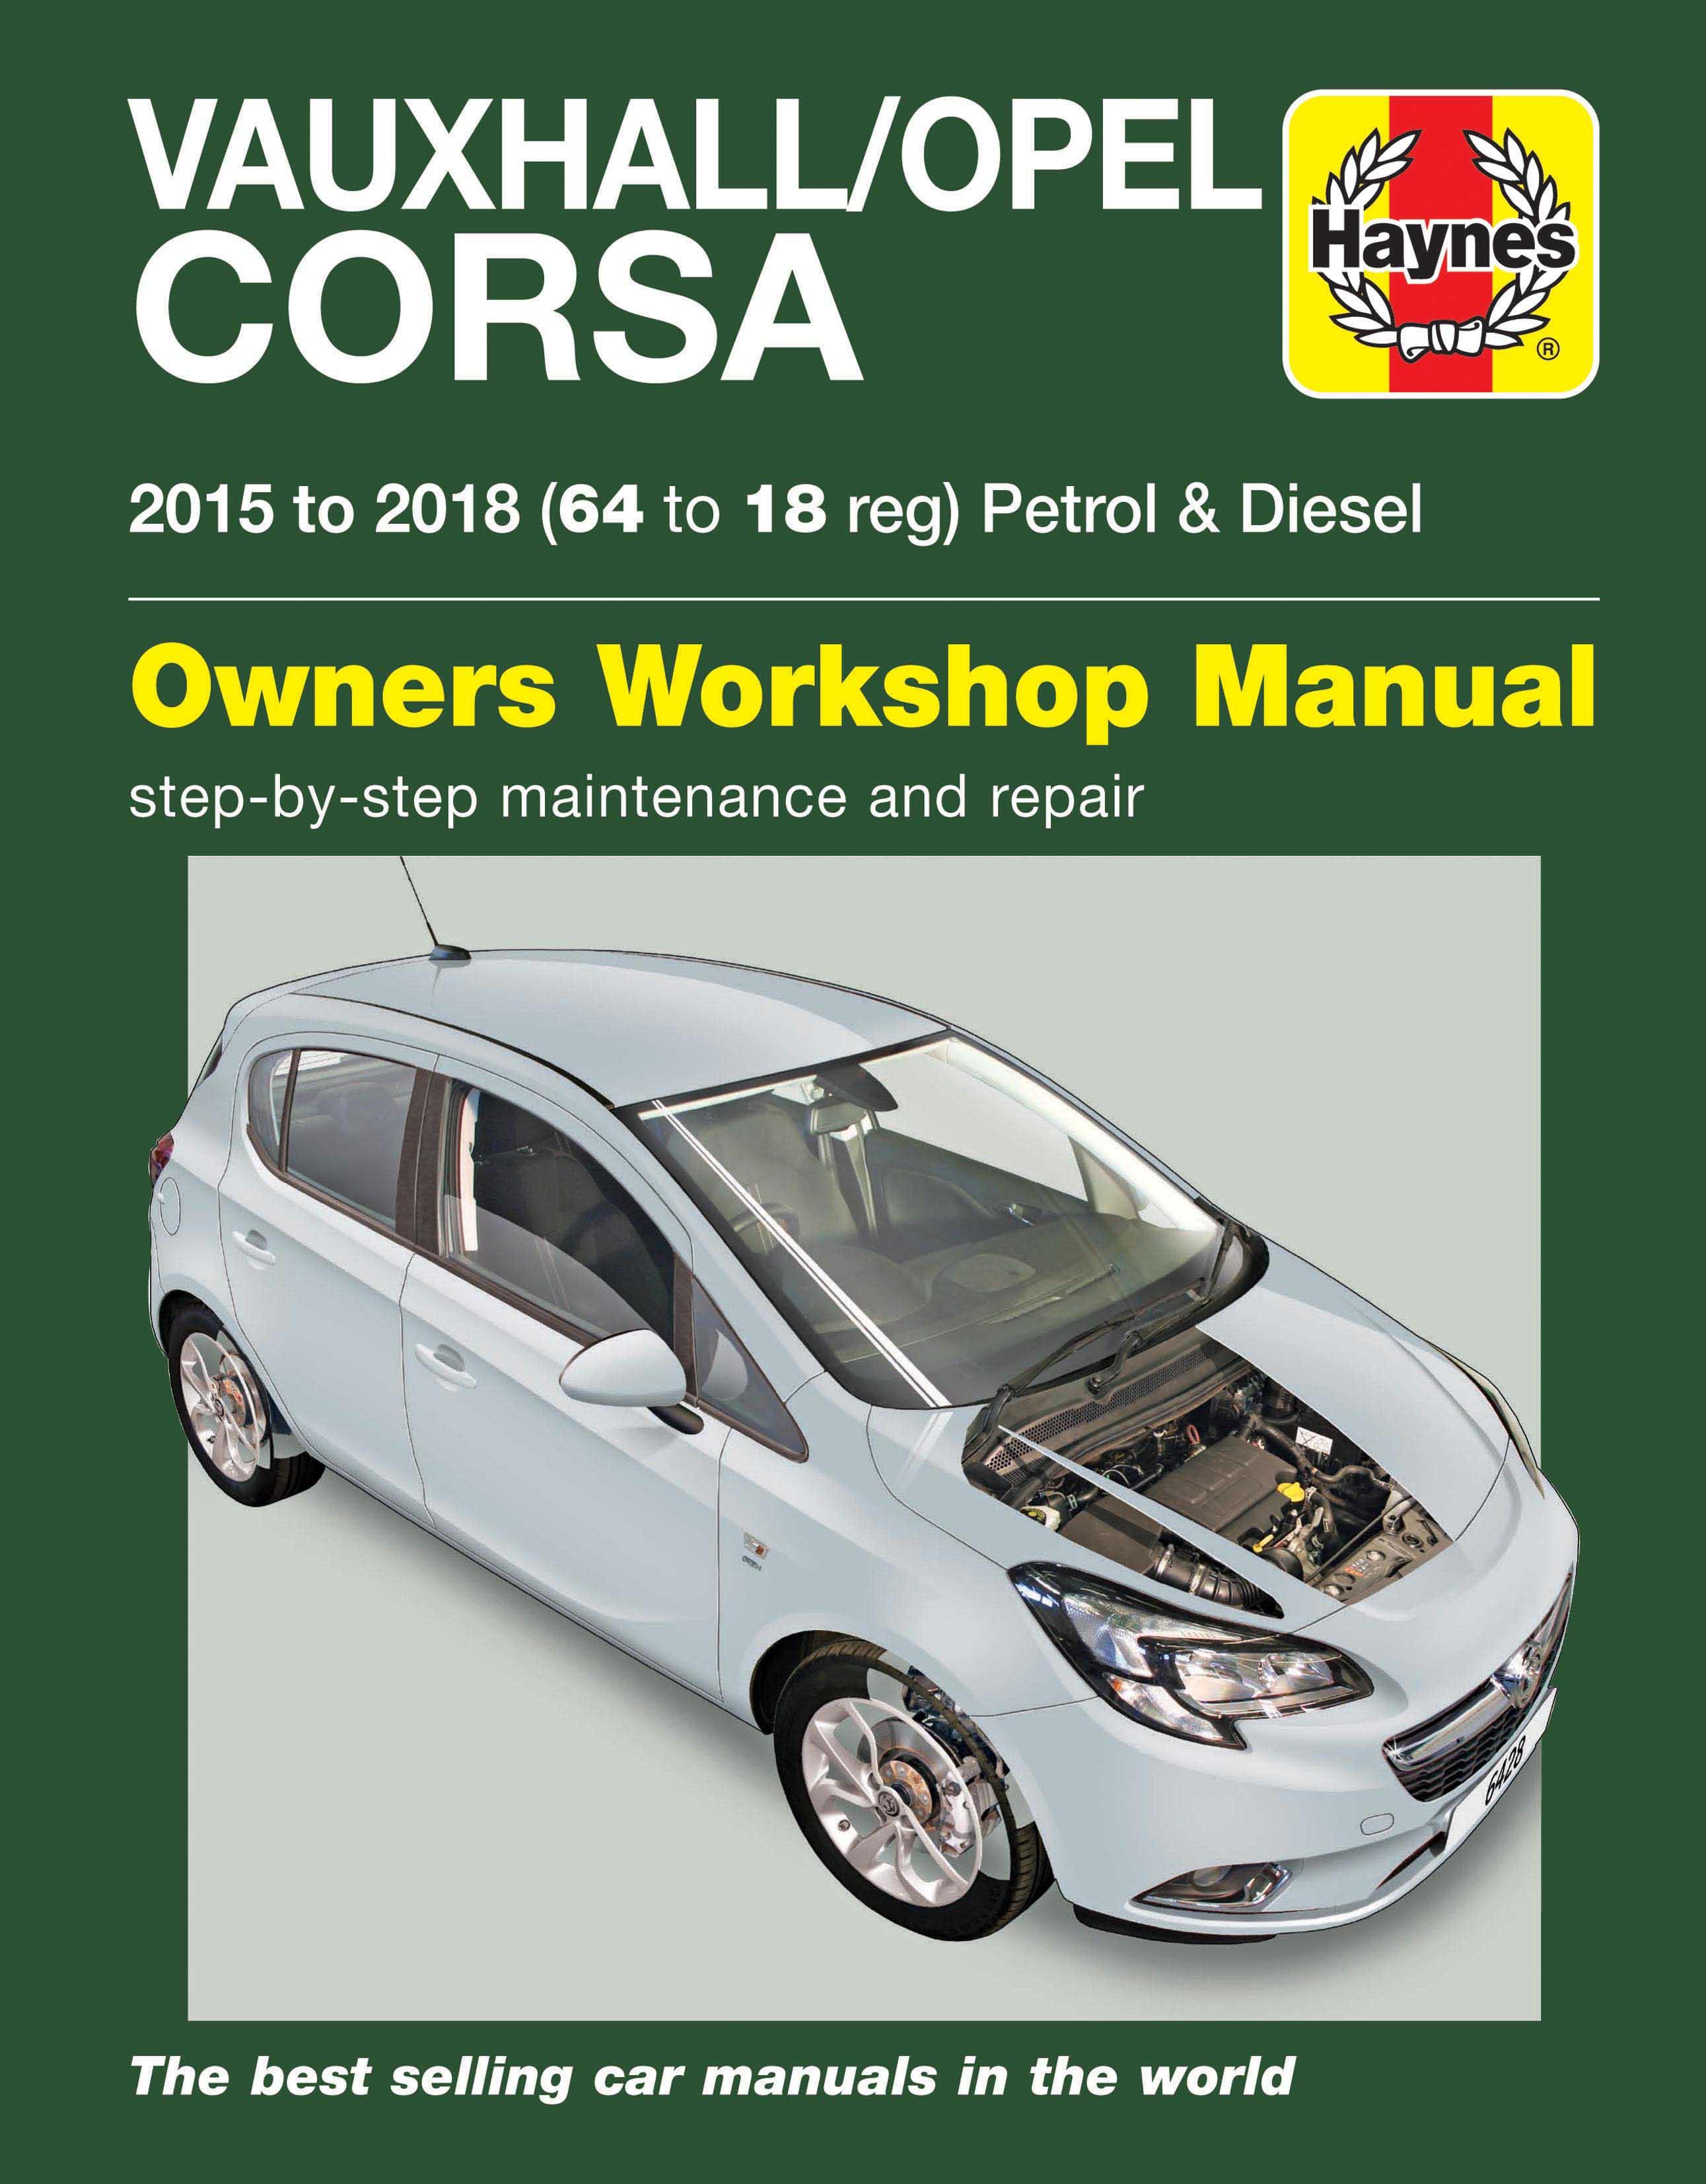 Haynes Manual no 4079 Onwards Vauxhall Corsa 00-03 Petrol & Diesel X Reg